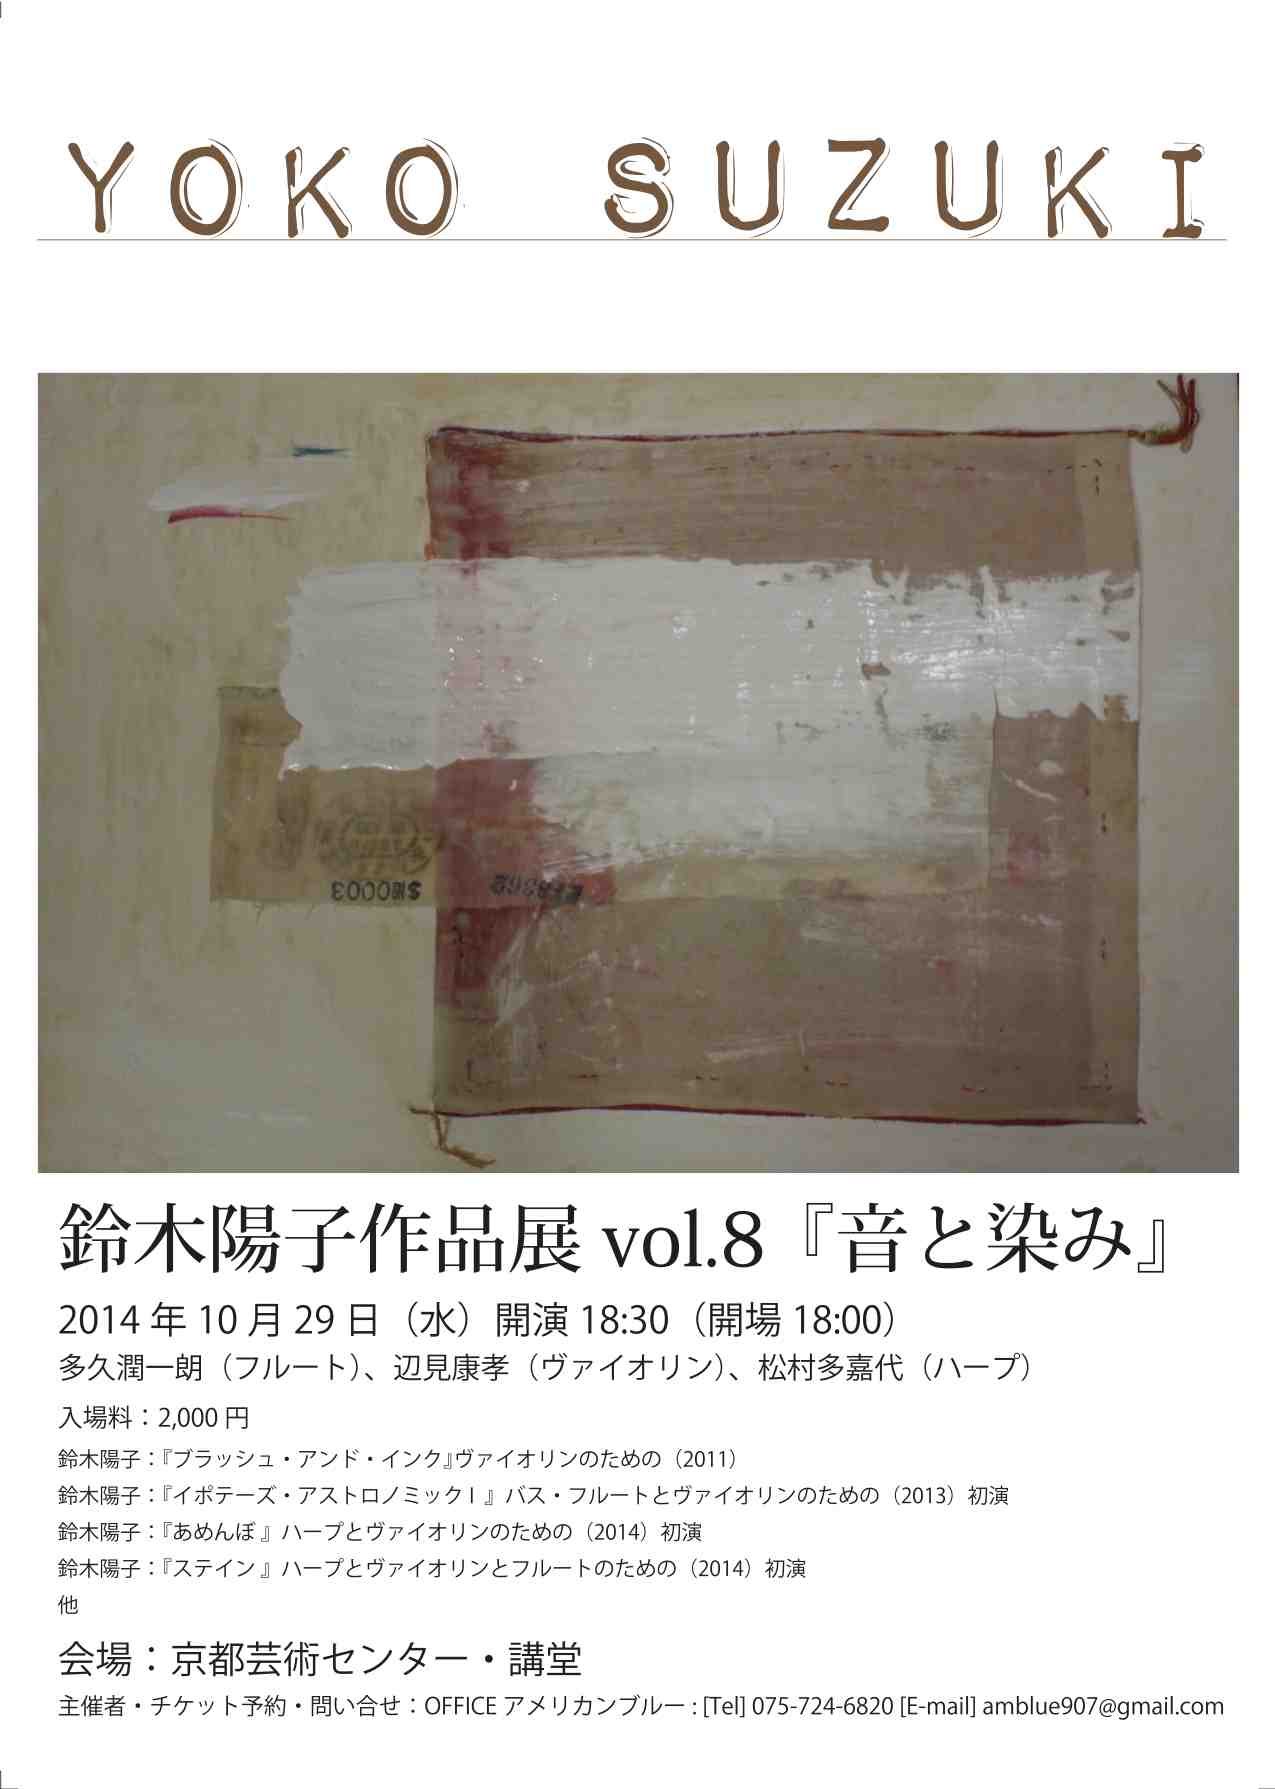 鈴木陽子作品展vol.8『音と染み』